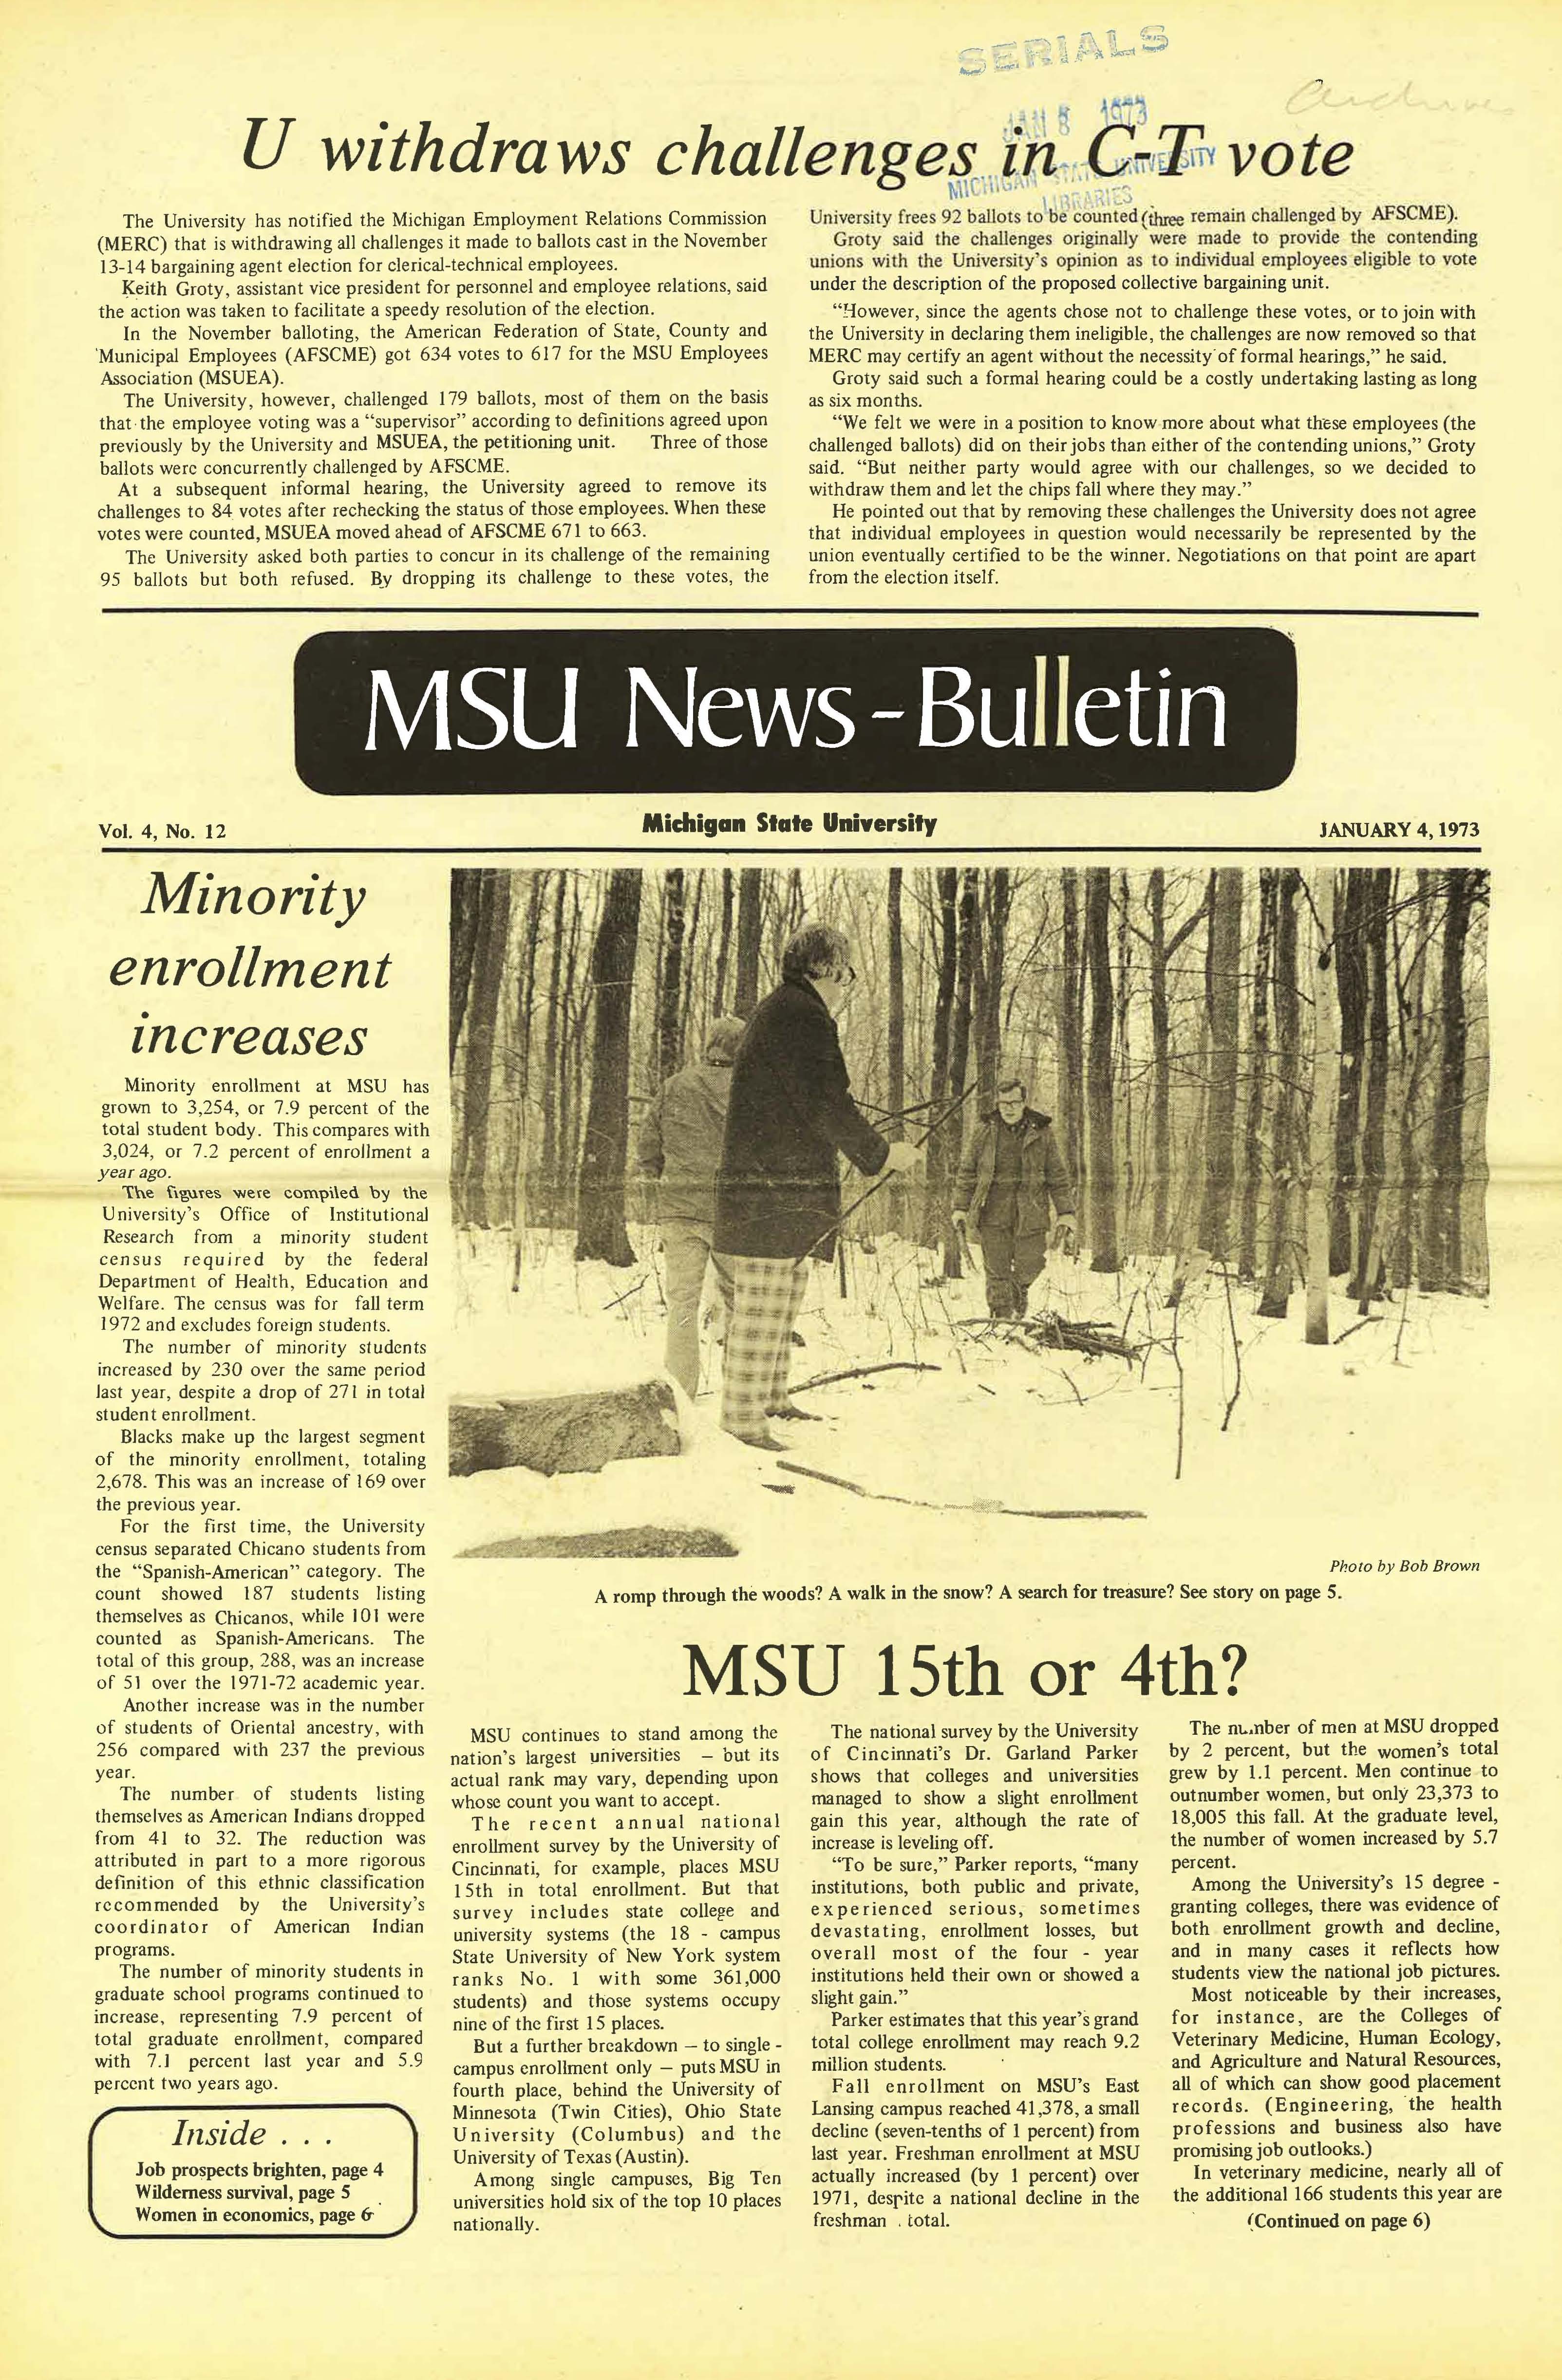 MSU News Bulletin, vol. 4, No. 32, June 7, 1973